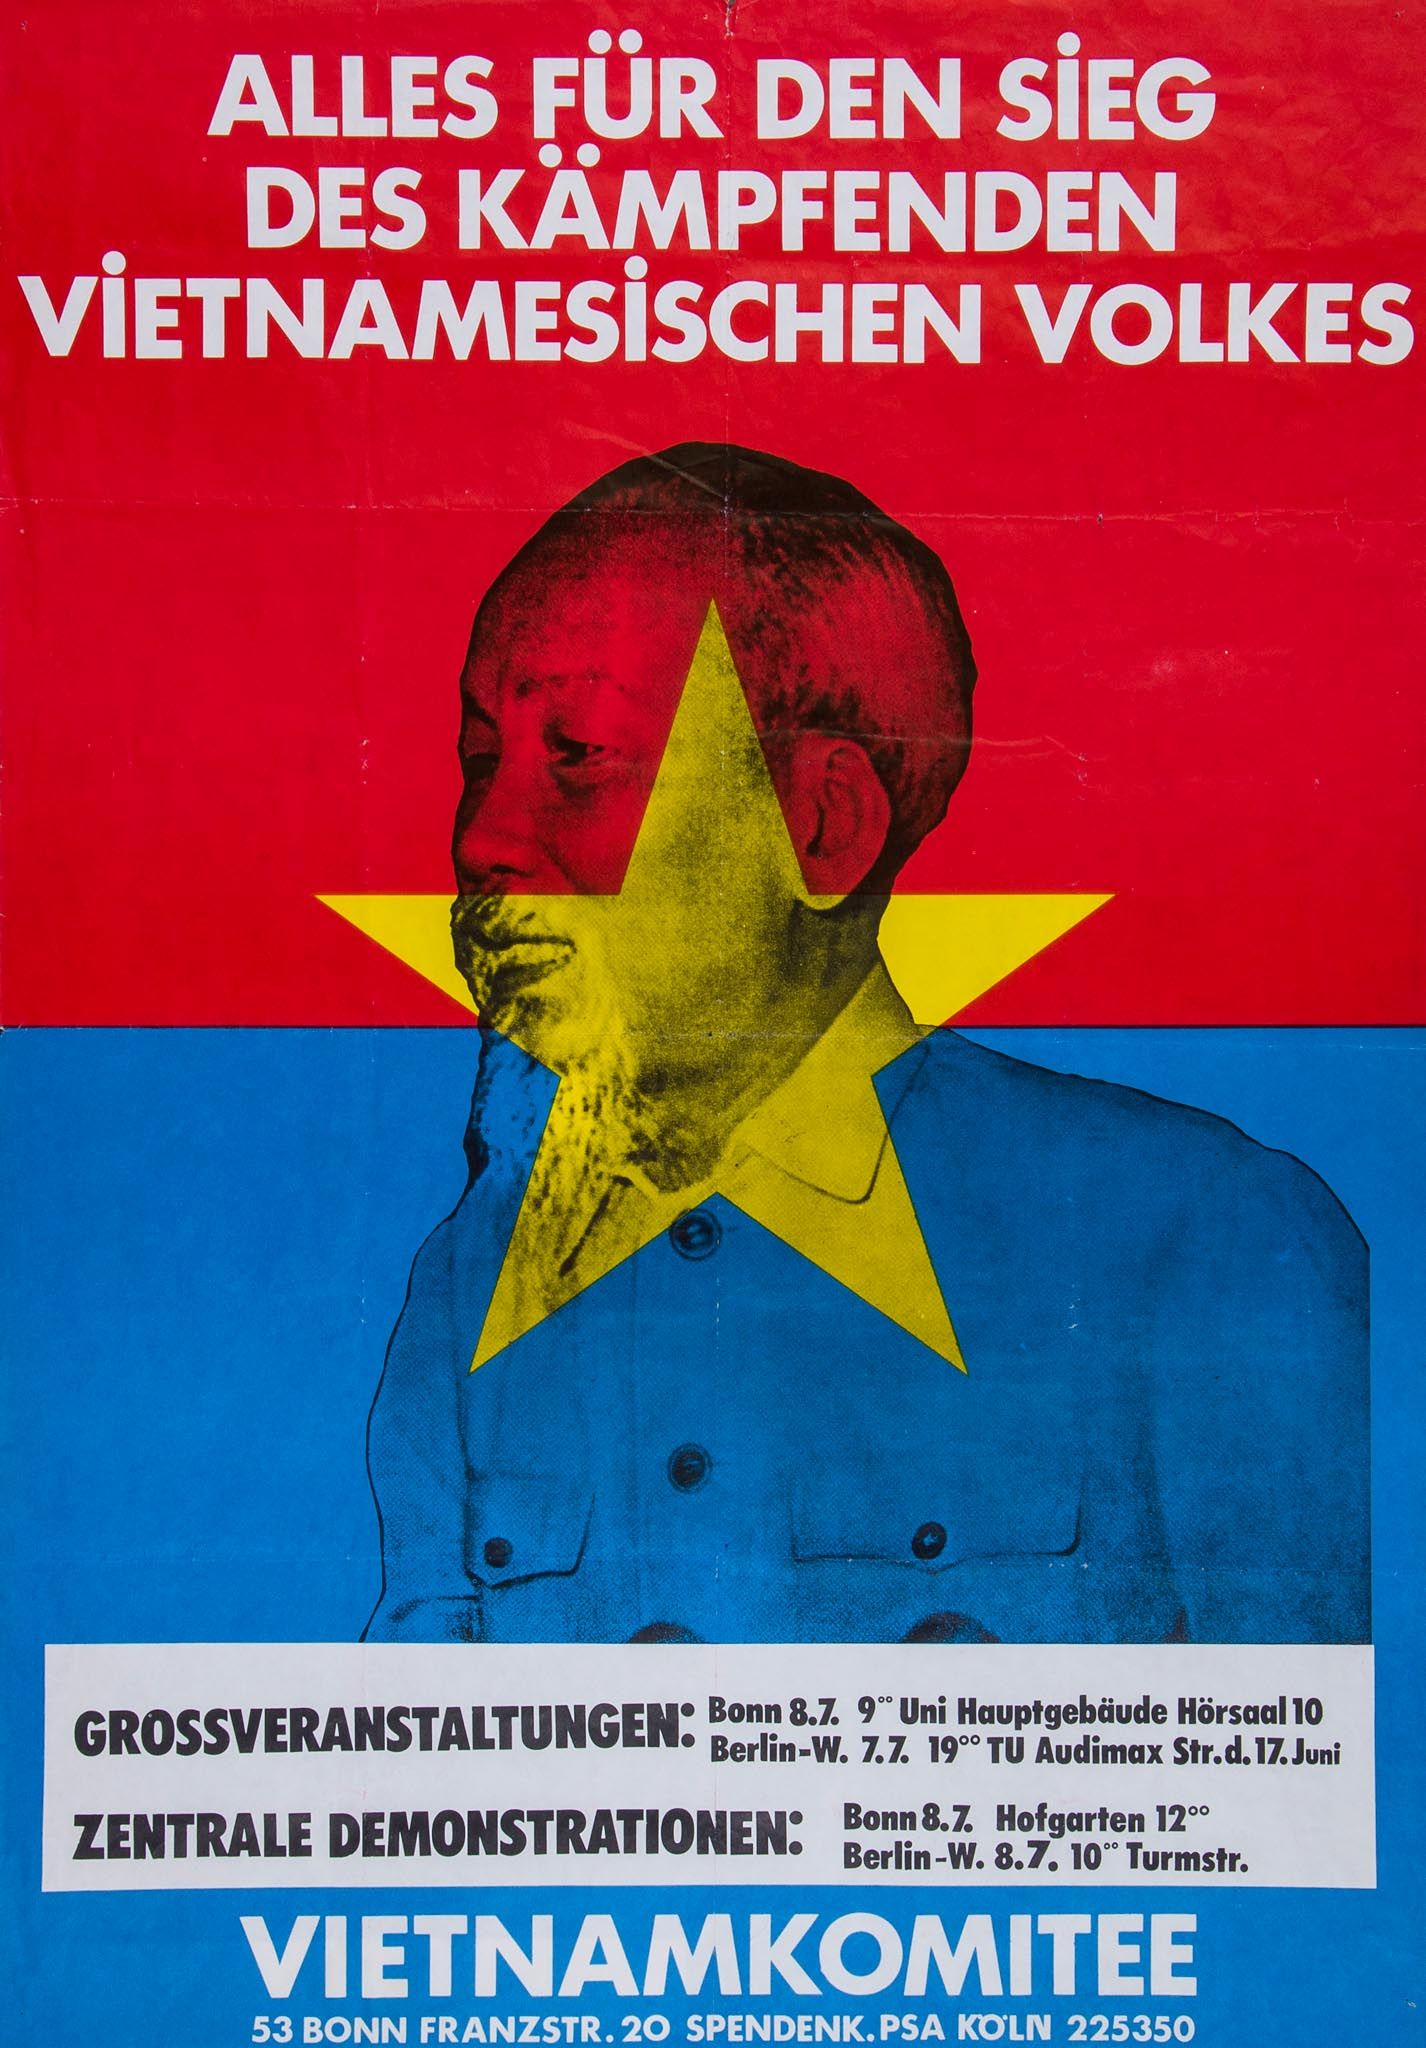 MEM A 68 x 49cm colour West German poster featuring a photomontage of Ho Chi... MEM A 68 x 49cm